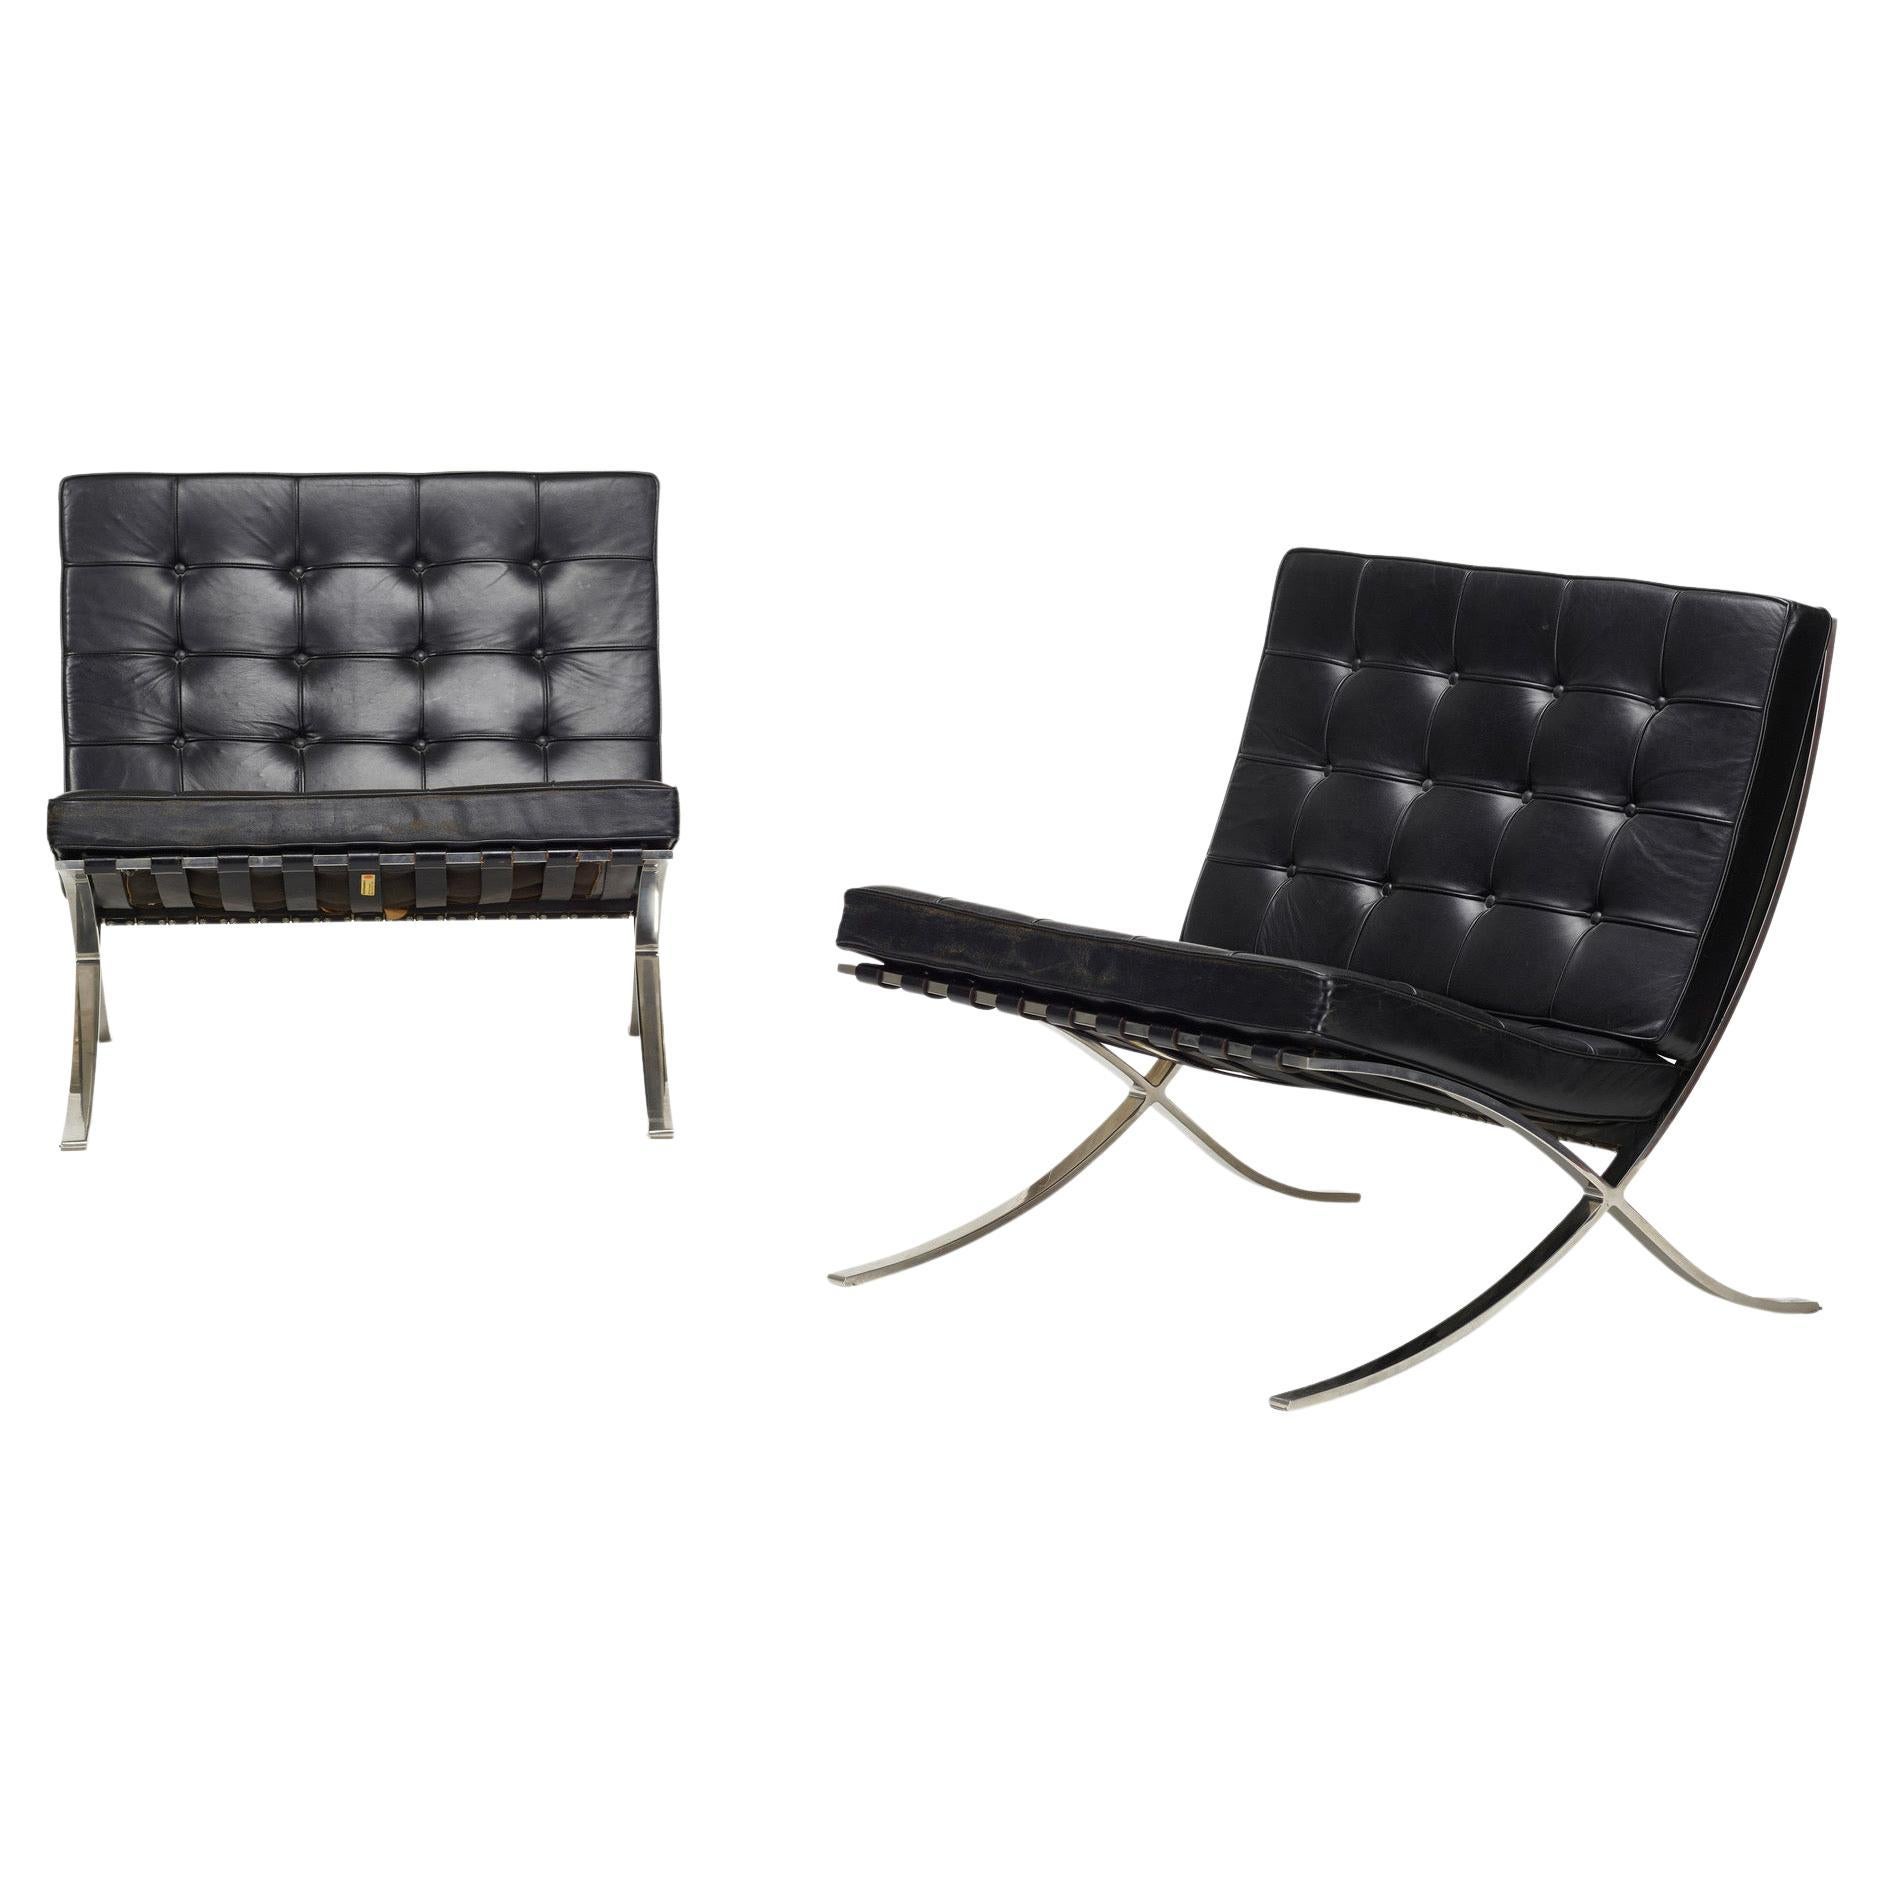 Chaise longue Knoll Barcelona Mies van der Rohe, cuir noir, inox, 1960s
Label, Knoll Associates, circa 1964
Acier inoxydable, cuir noir, entièrement d'origine. 
 Mesures : 30 H × 30 L × 30 P en 
L'offre concerne une seule chaise longue. Veuillez